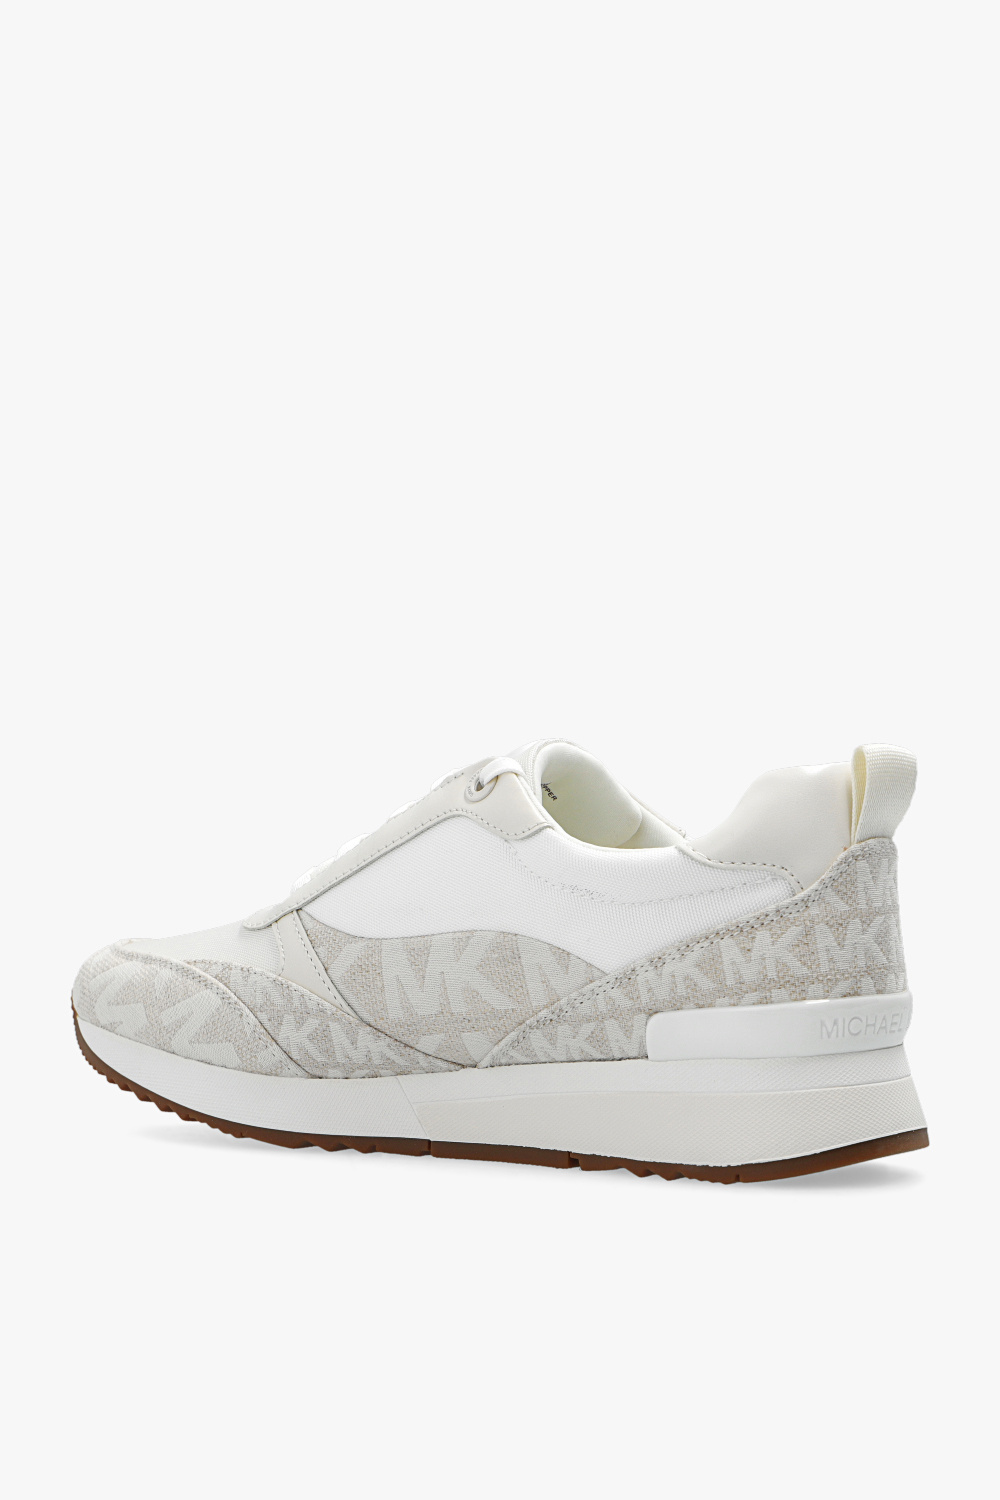 karrimor aspen low ladies waterproof walking shoes ‘Allie’ sneakers